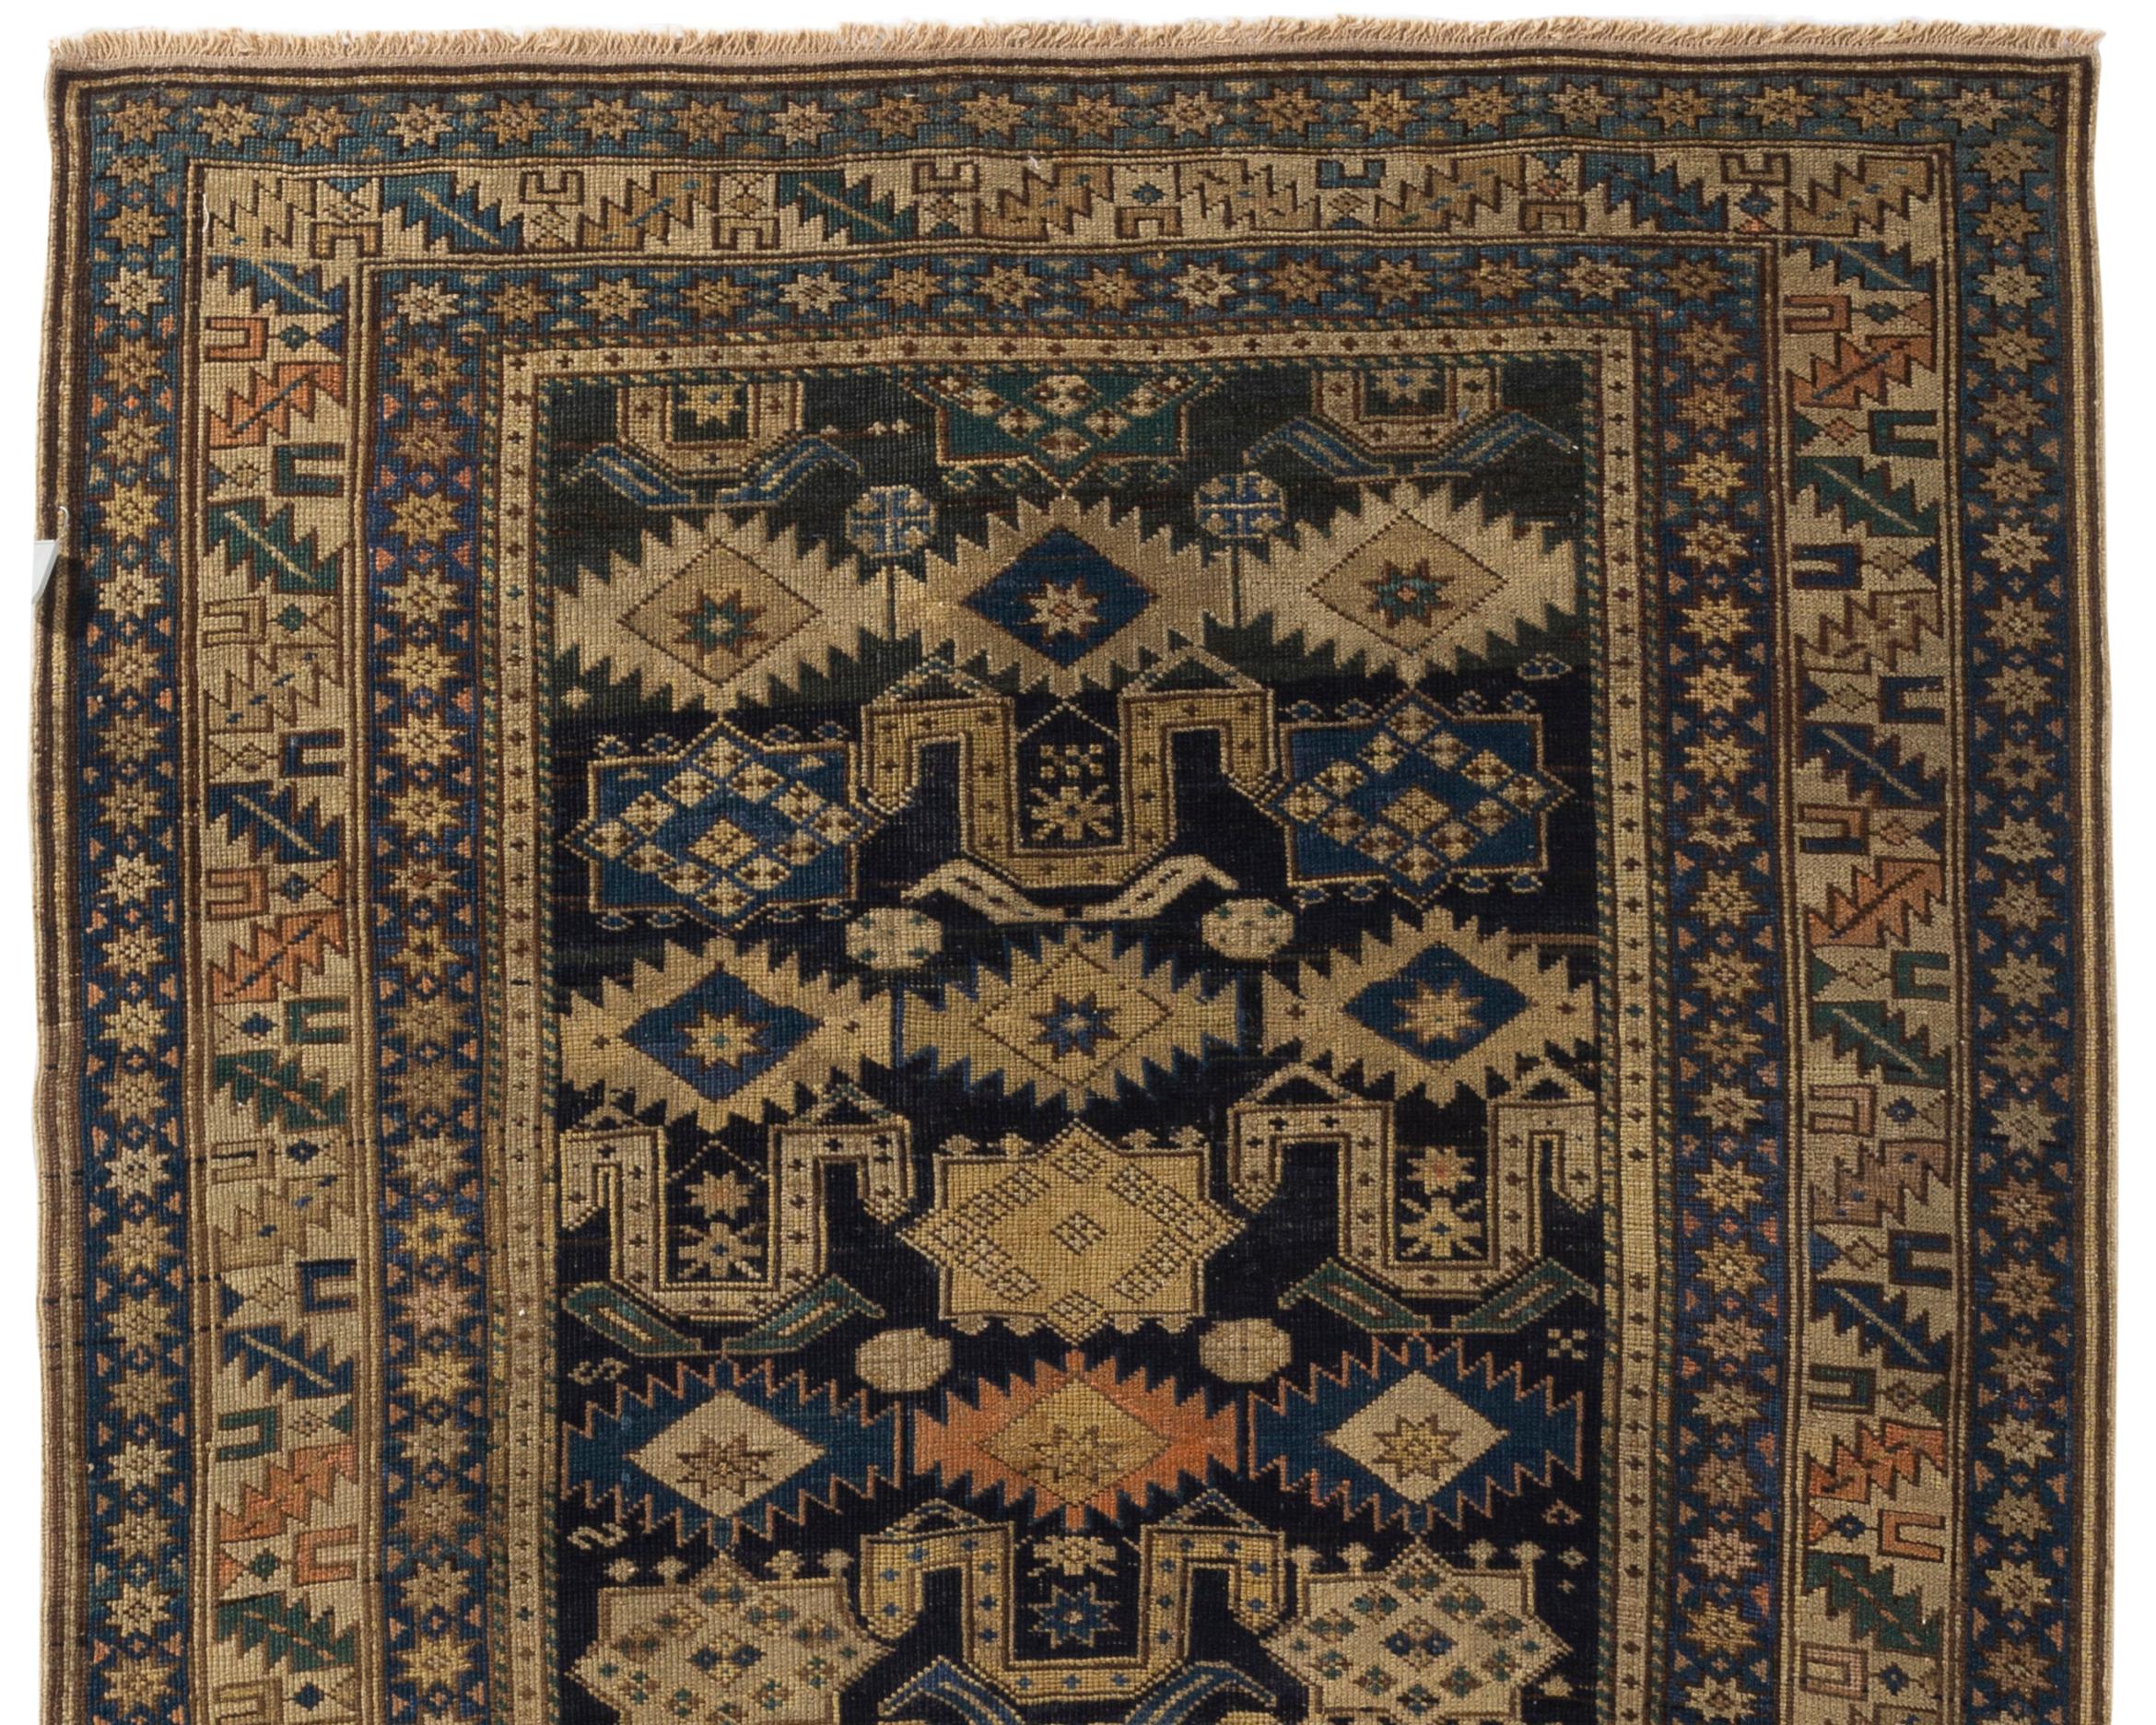 Antique tapis caucasien Perpedil Shirvan circa 1880 de la ville du même nom située au sud-est de Kuba dans la région caucasienne du Daghestan. Il présente le motif caractéristique de la corne de bélier associé aux tapis de cette région sur un fond